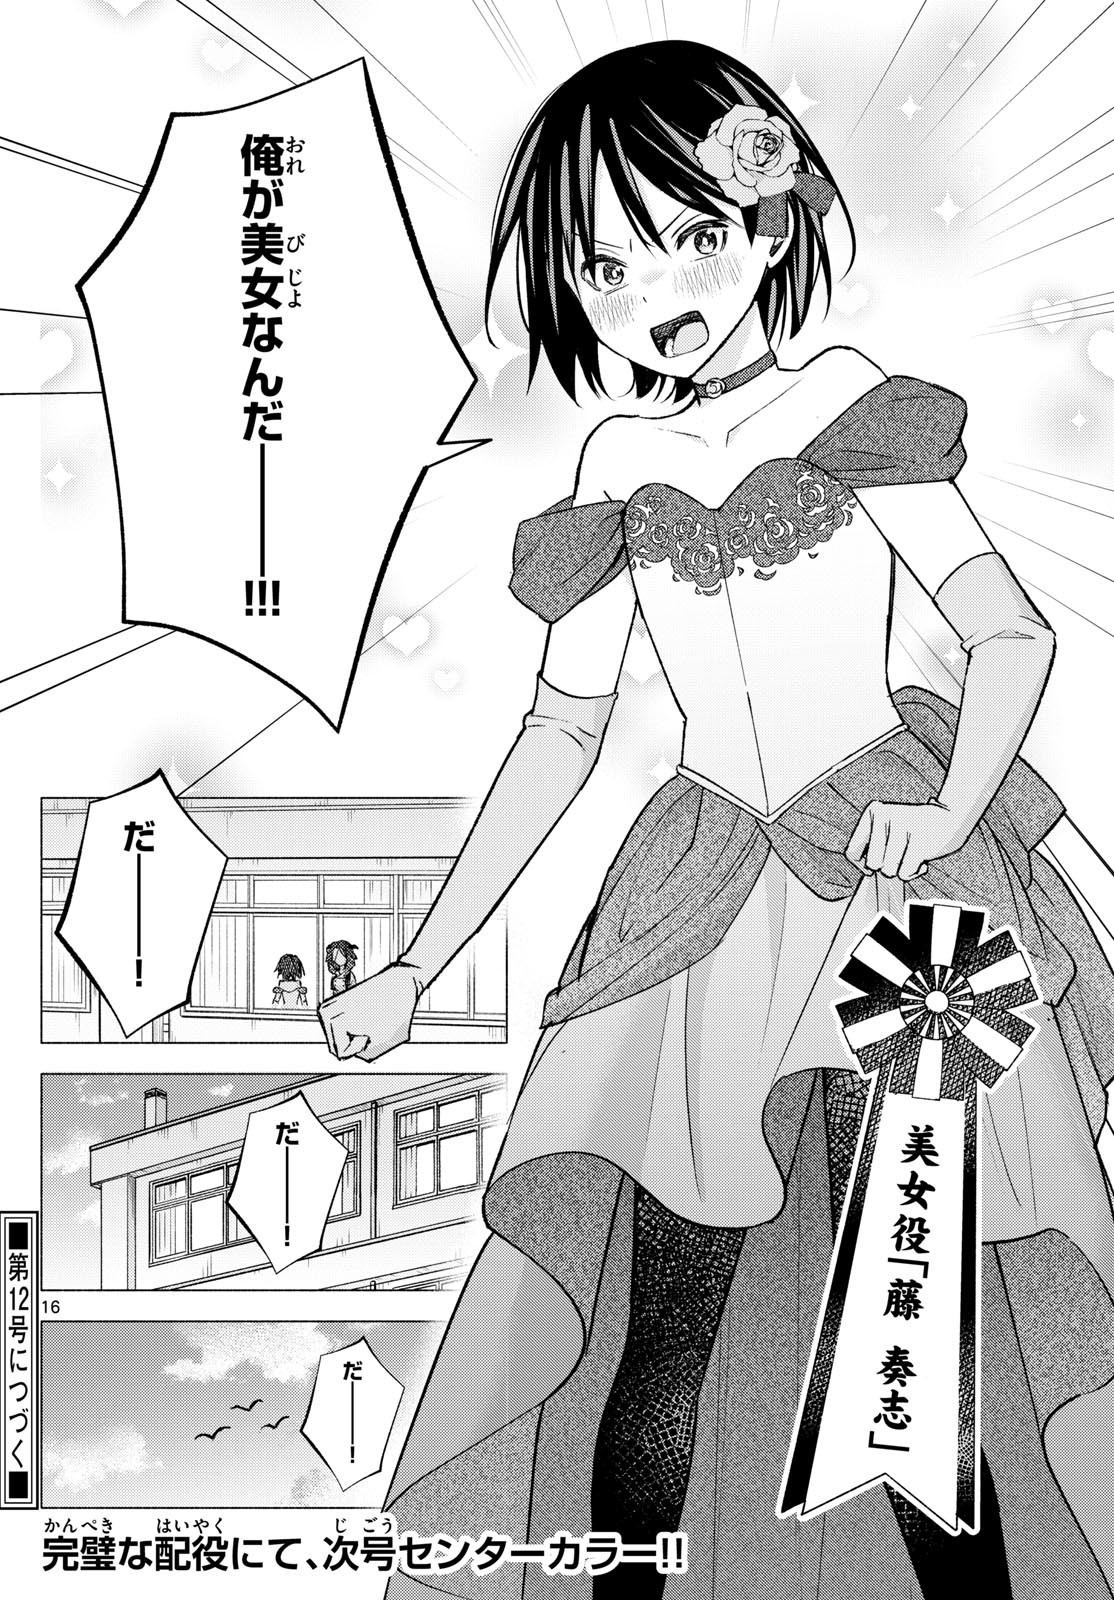 Kimi to Warui Koto ga Shitai - Chapter 061 - Page 16